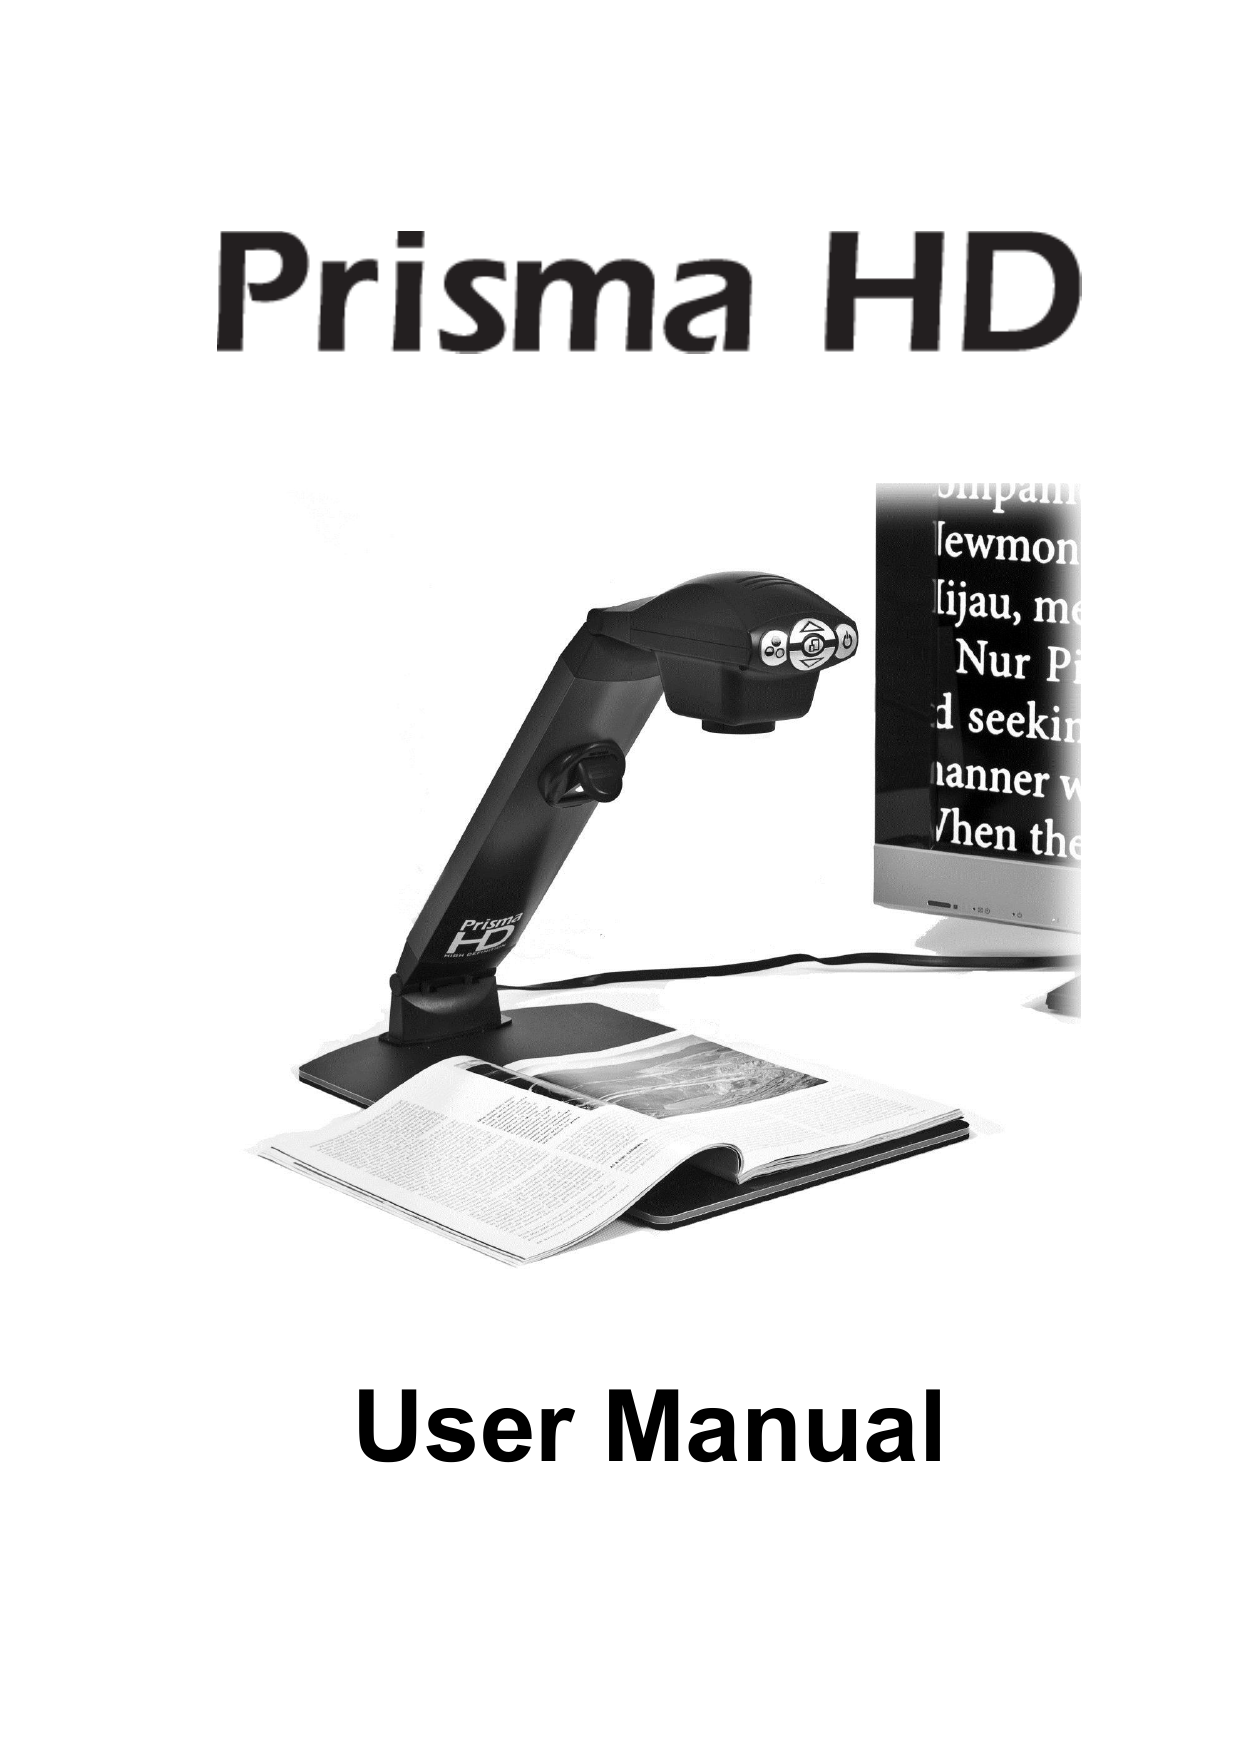 Eschenbach Prisma HD User Manual | Manualzz